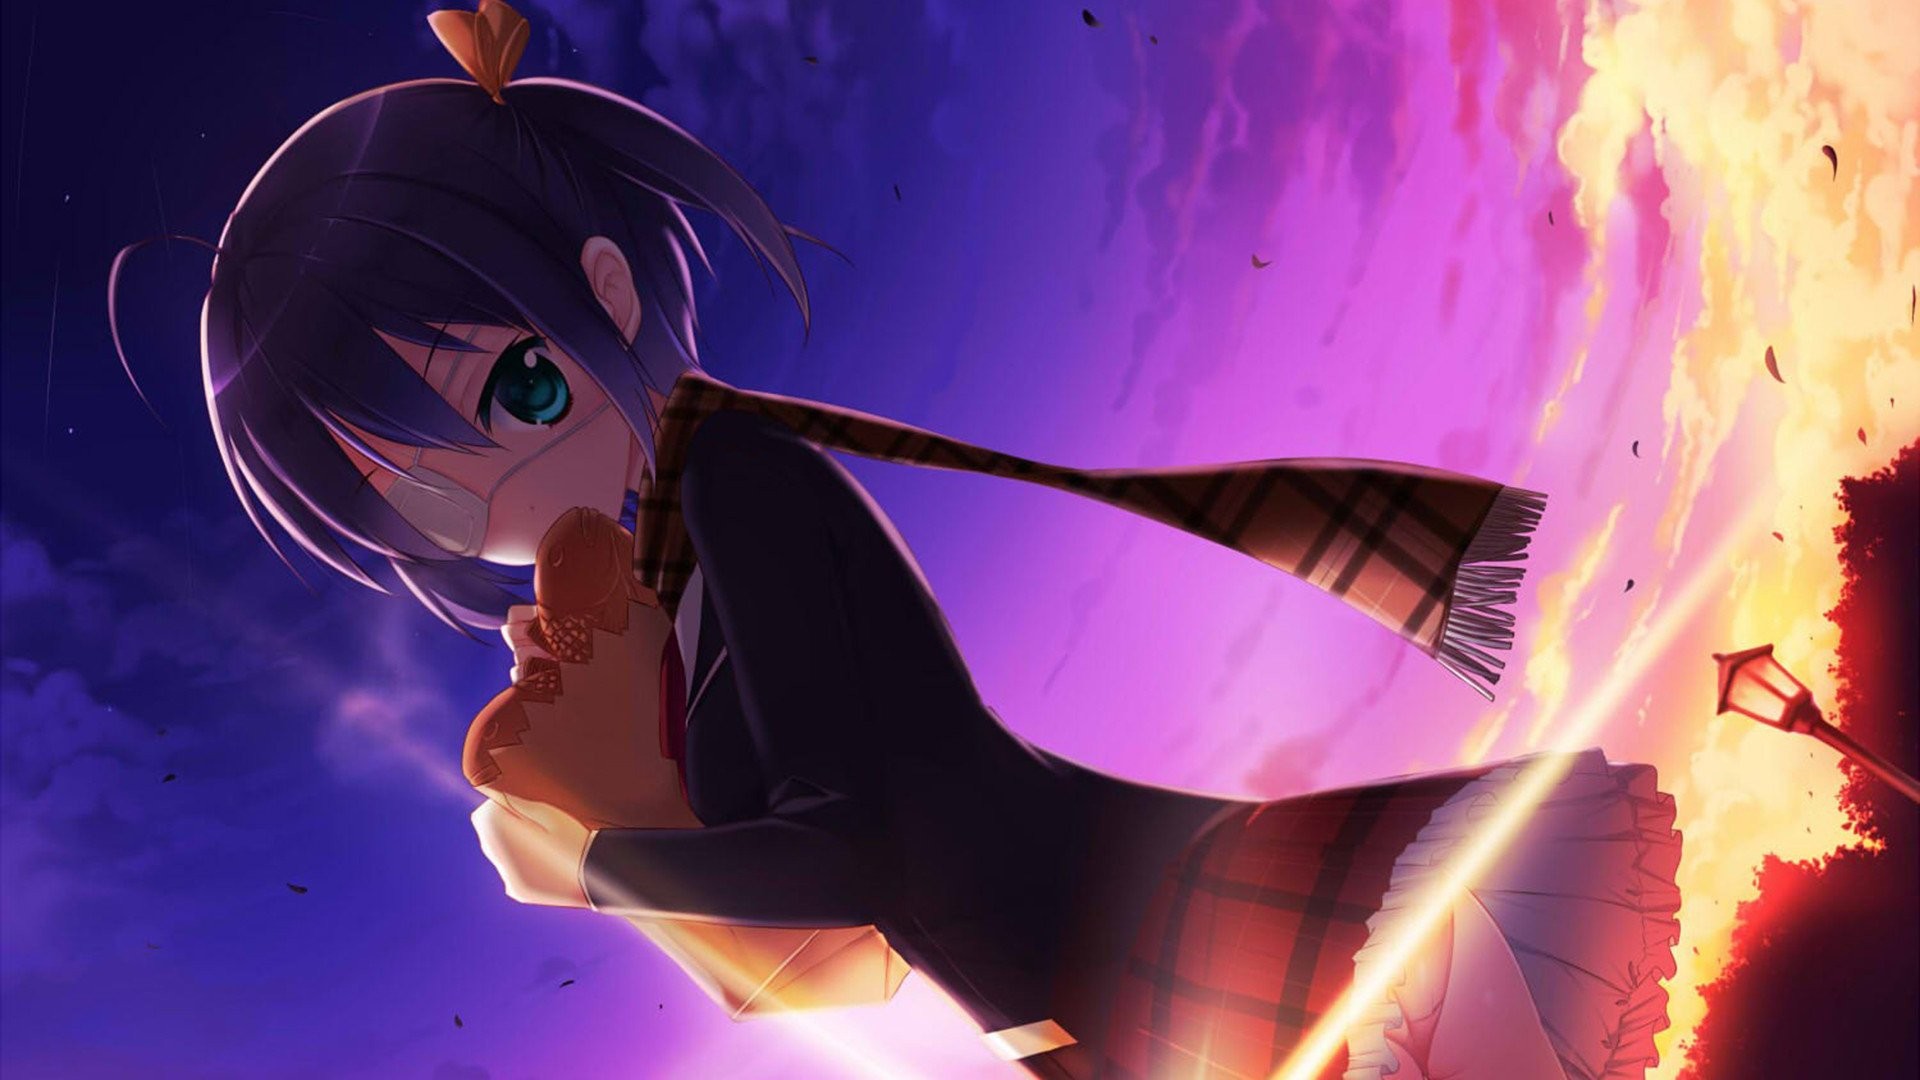 1920x1080 Anime Love, Chunibyo & Other Delusions Rikka Takanashi Wallpaper |  Chuunibyou demo Koi ga Shitai! / Ð§ÑÐ´Ð°ÑÐµÑÑÐ²Ð° Ð»ÑÐ±Ð²Ð¸ Ð½Ðµ Ð¿Ð¾Ð¼ÐµÑÐ°! | Pinterest |  Anime